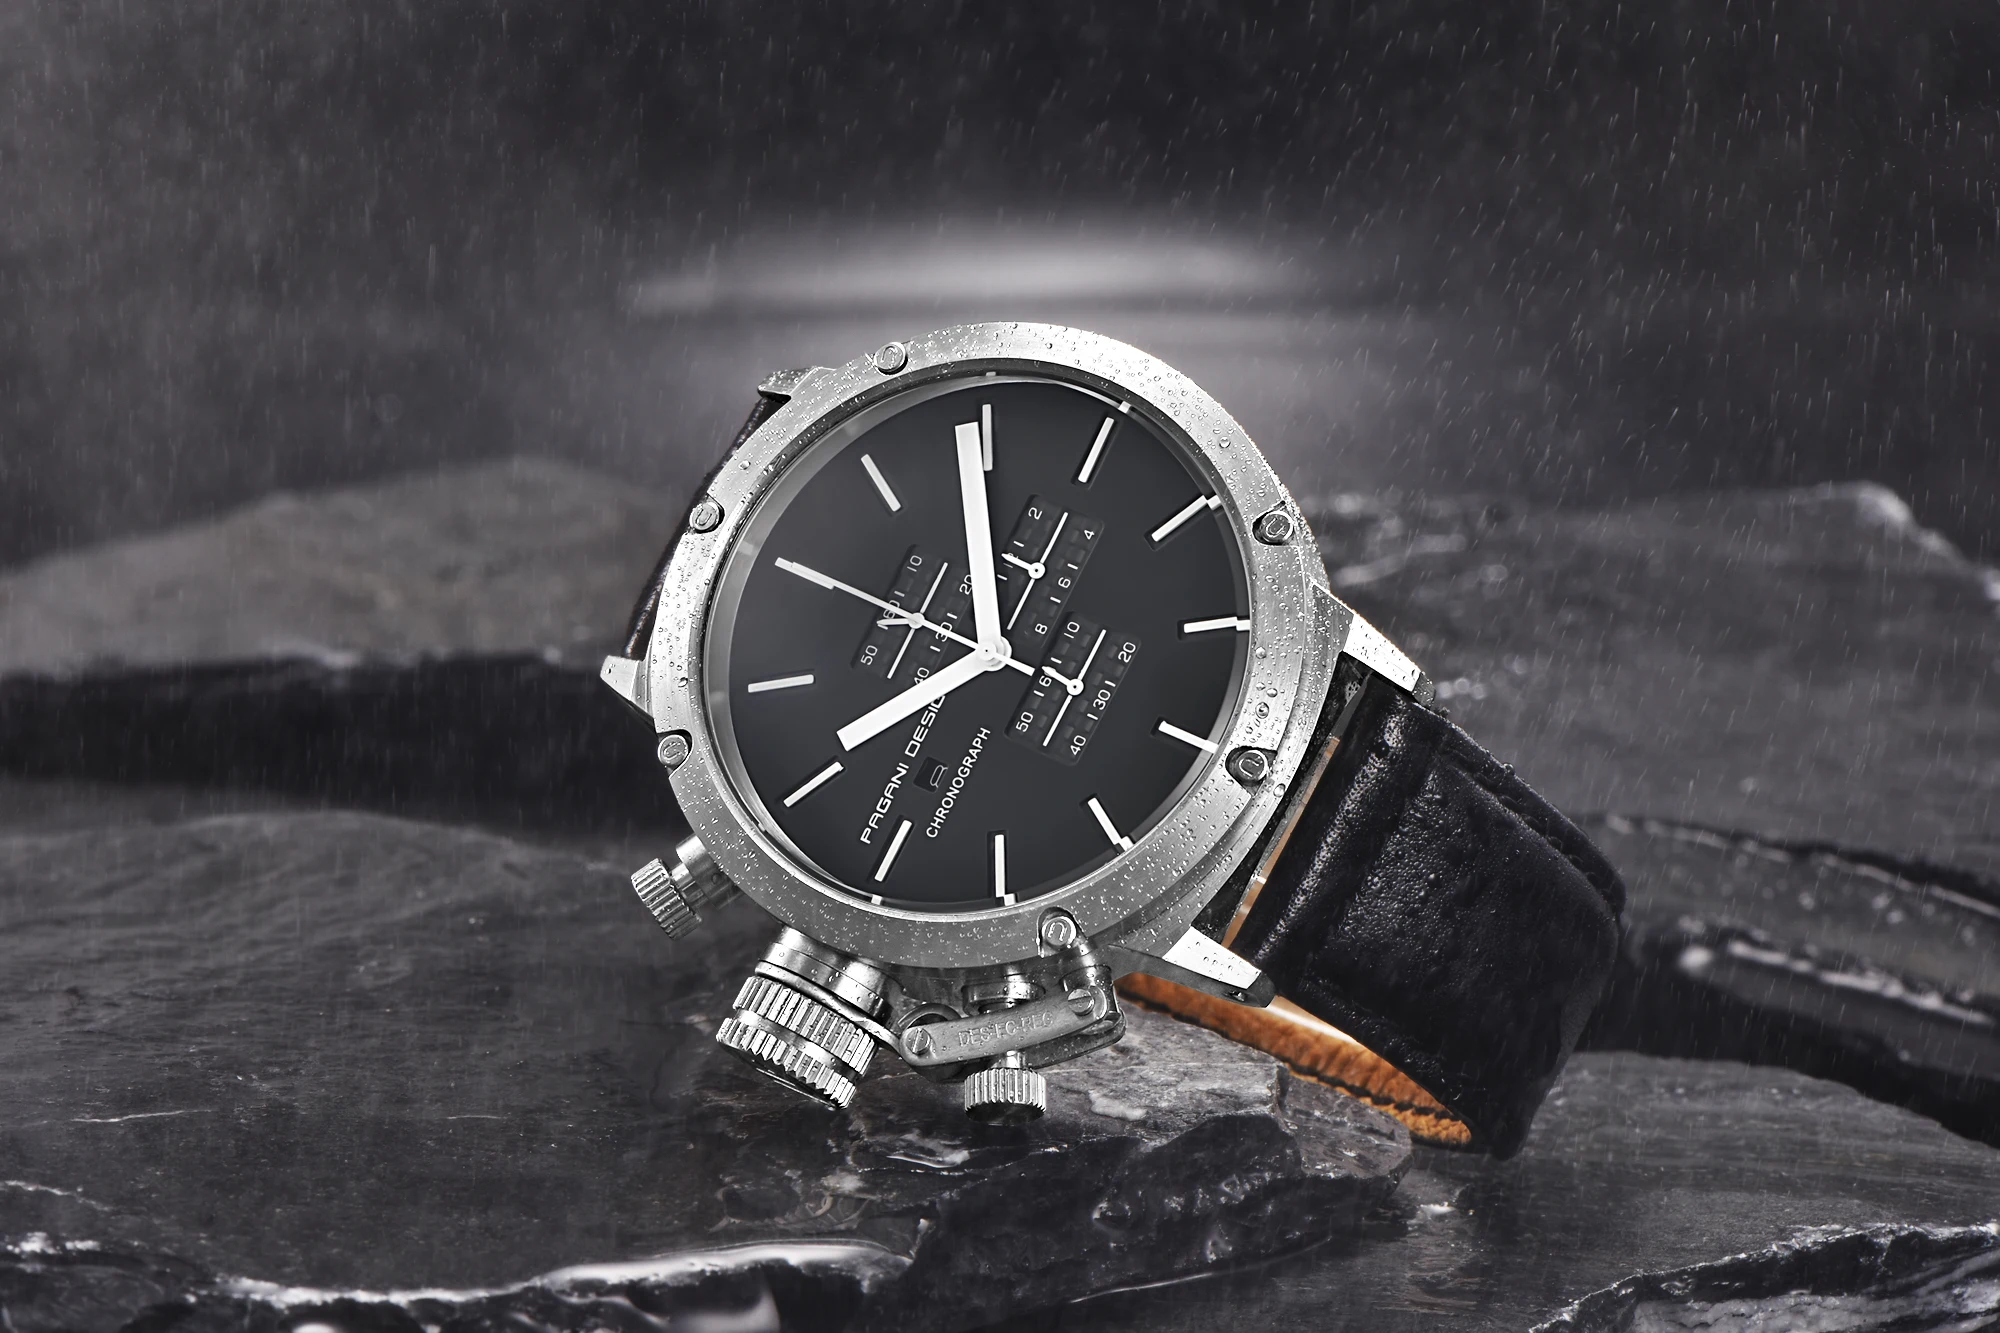 PAGANI Дизайн Спортивные часы для мужчин погружение многоцелевой Уникальный инновационный хронограф часы многофункциональные водонепроницаемые автоматические часы с датой